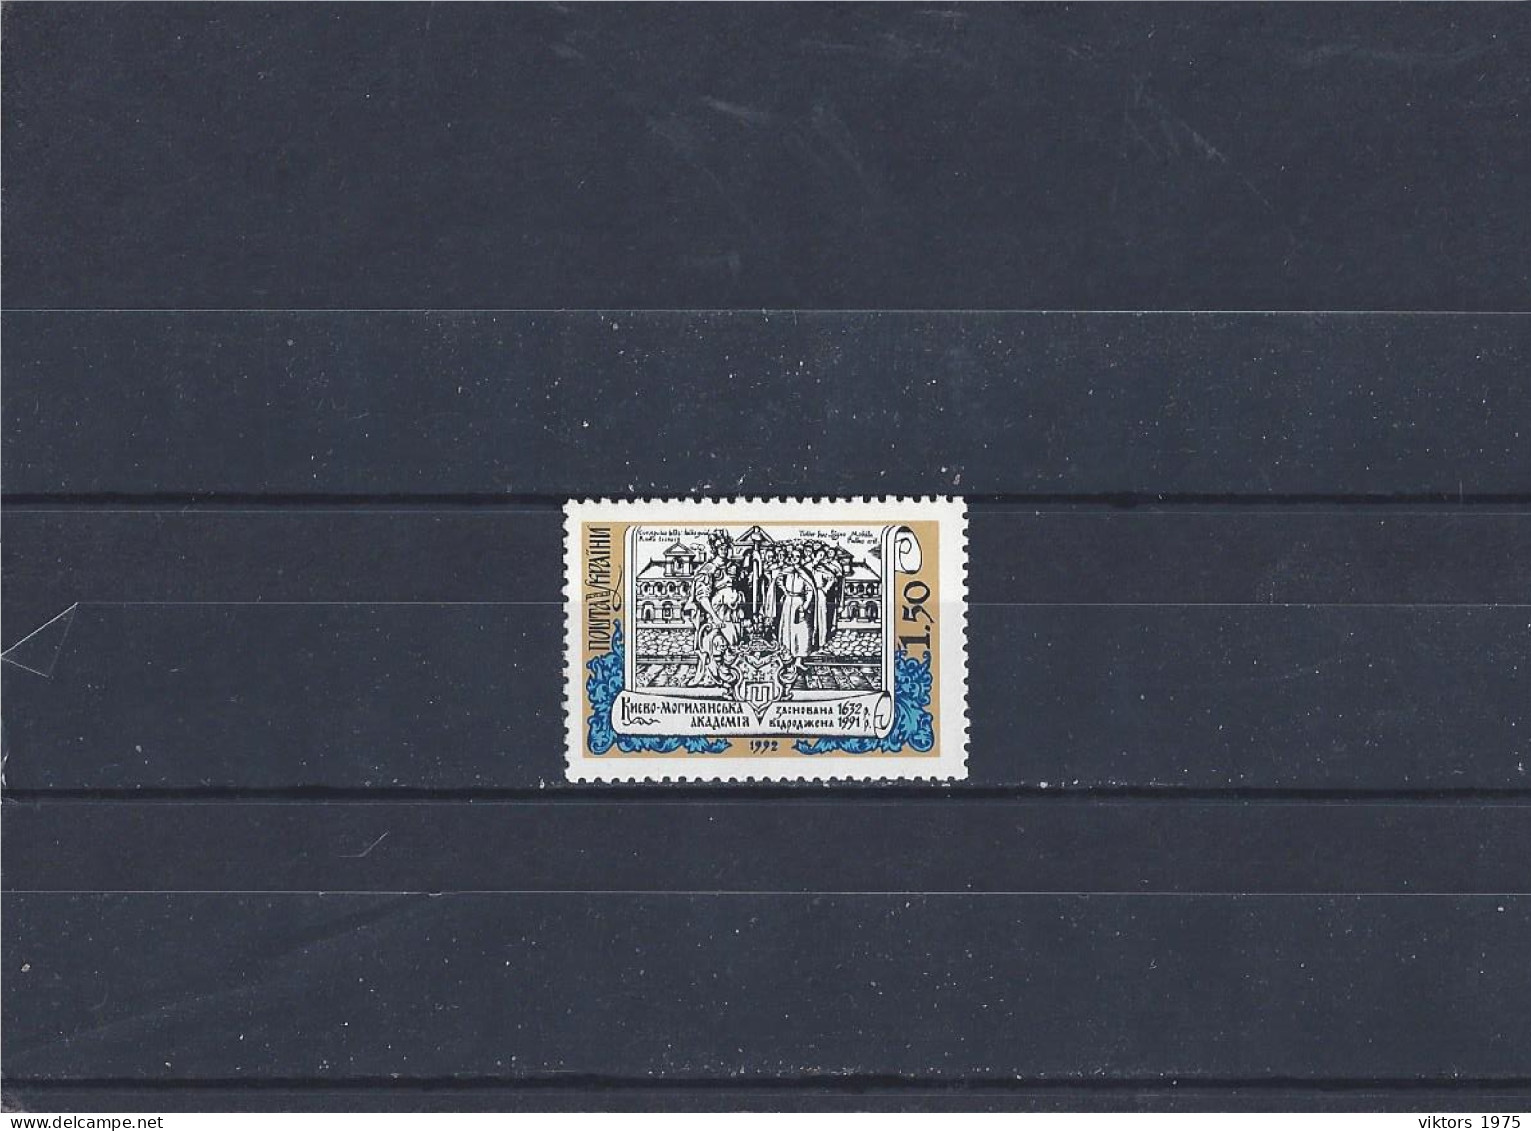 MNH Stamp Nr.93 In MICHEL Catalog - Ukraine